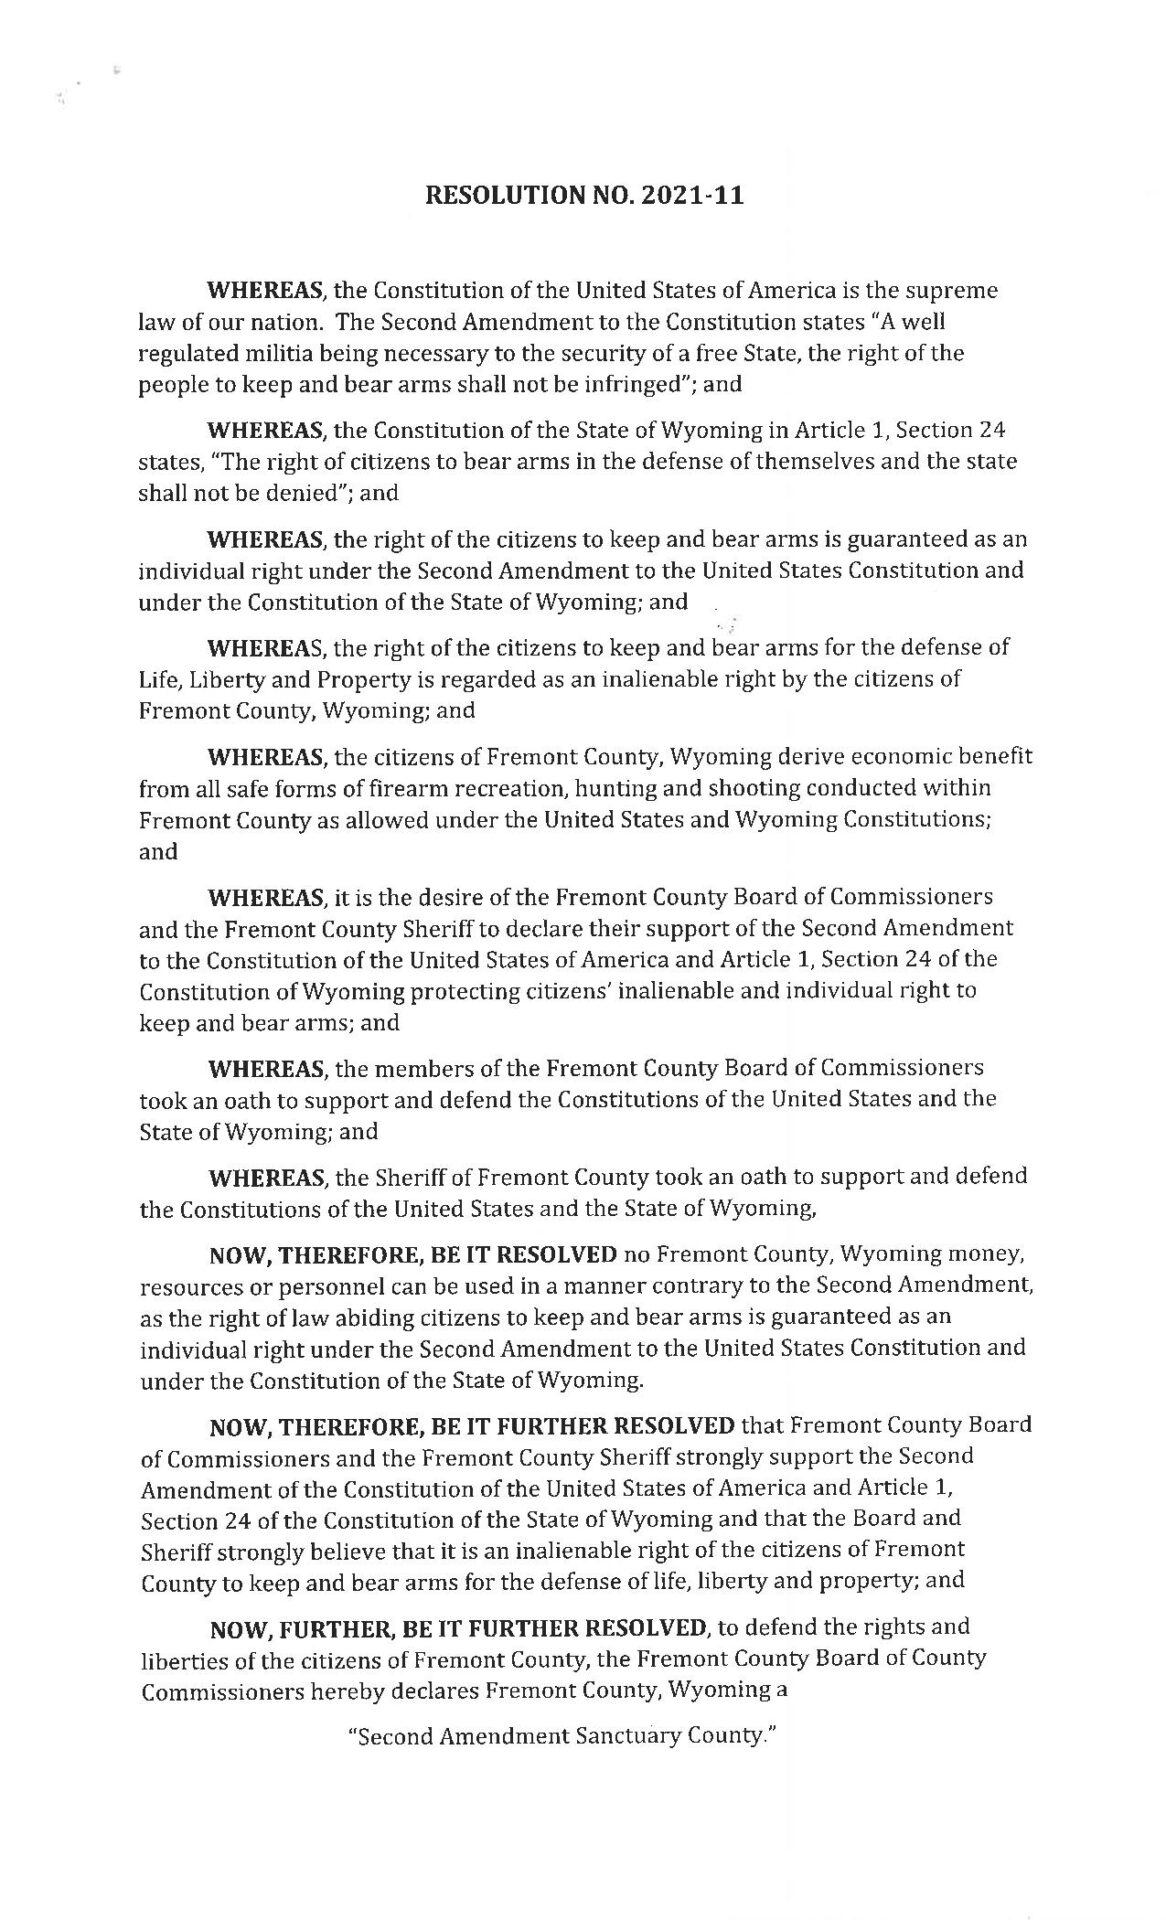 RES-2021-11 Second Amendment Sanctuary Fremont Wyoming page 1